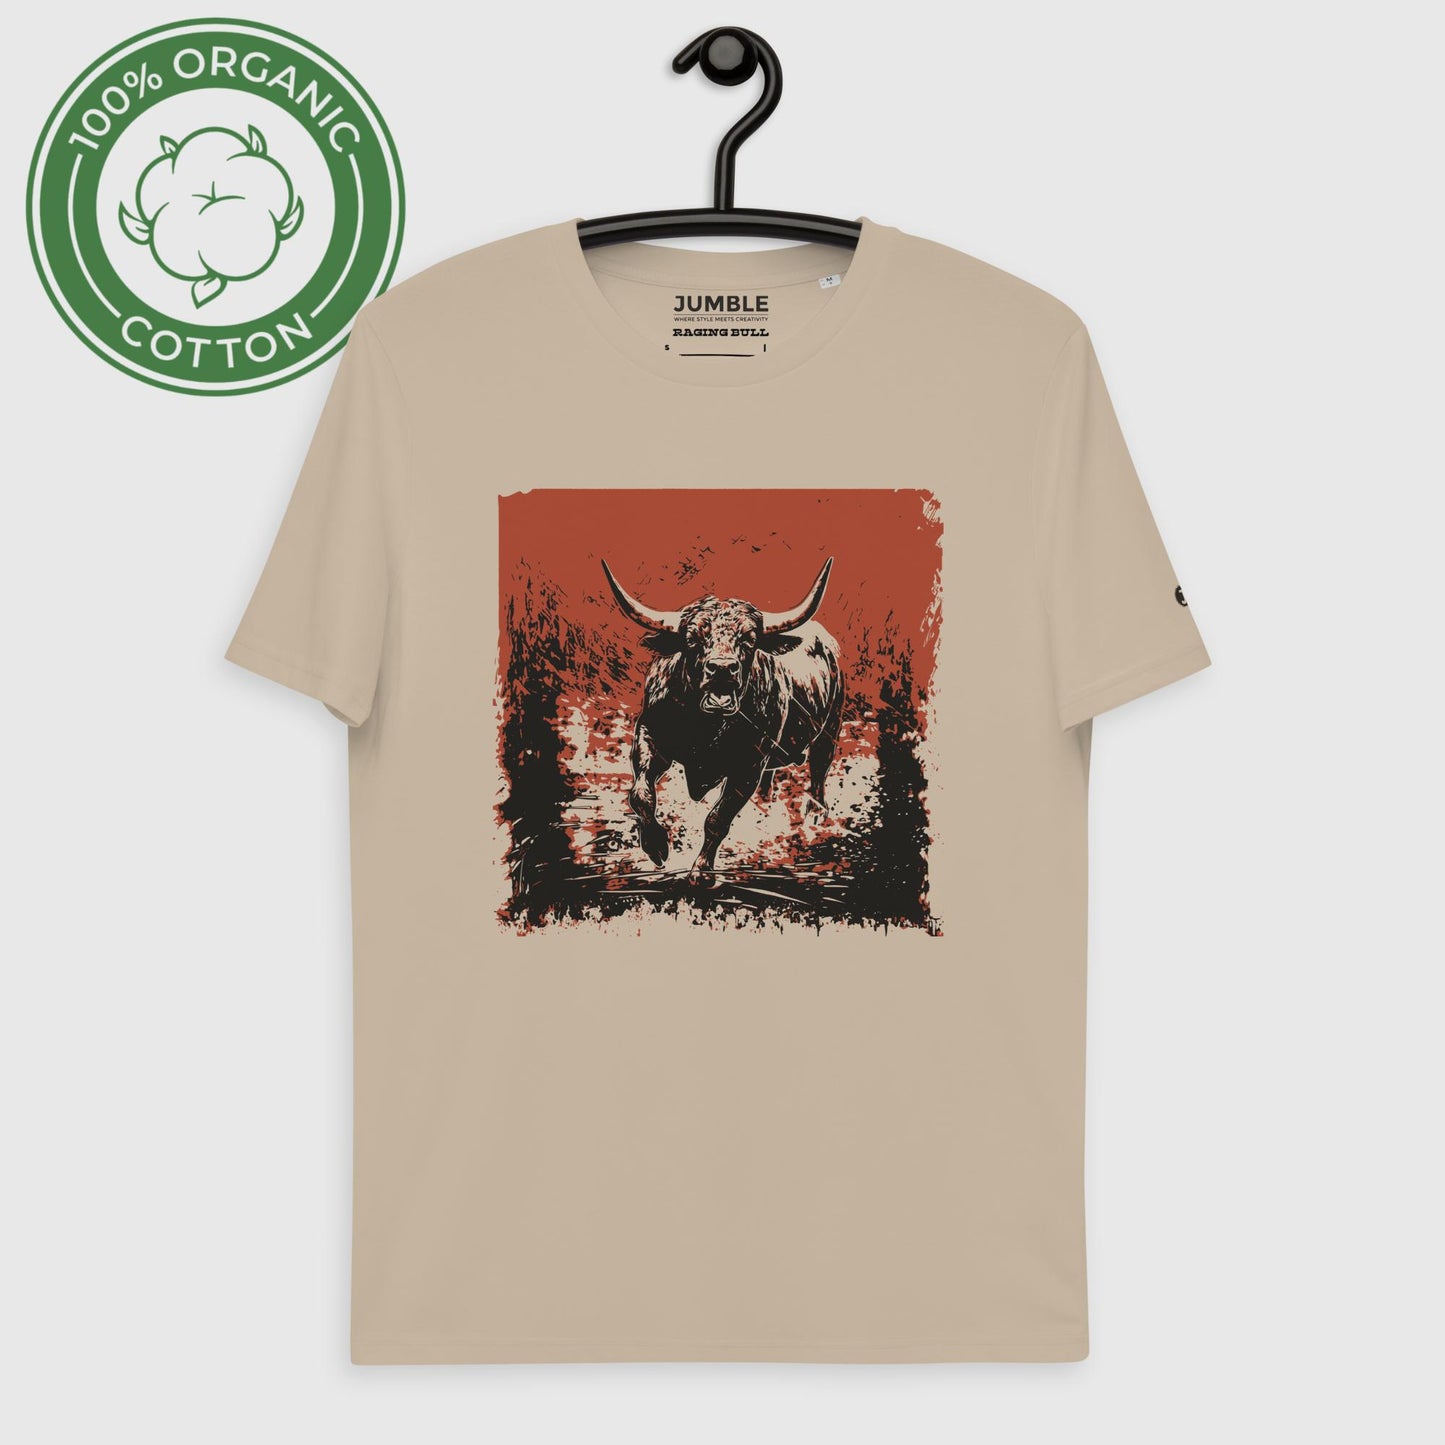 Raging Bull Unisex organic cotton t-shirt, in desert dust. Displayed on hanger